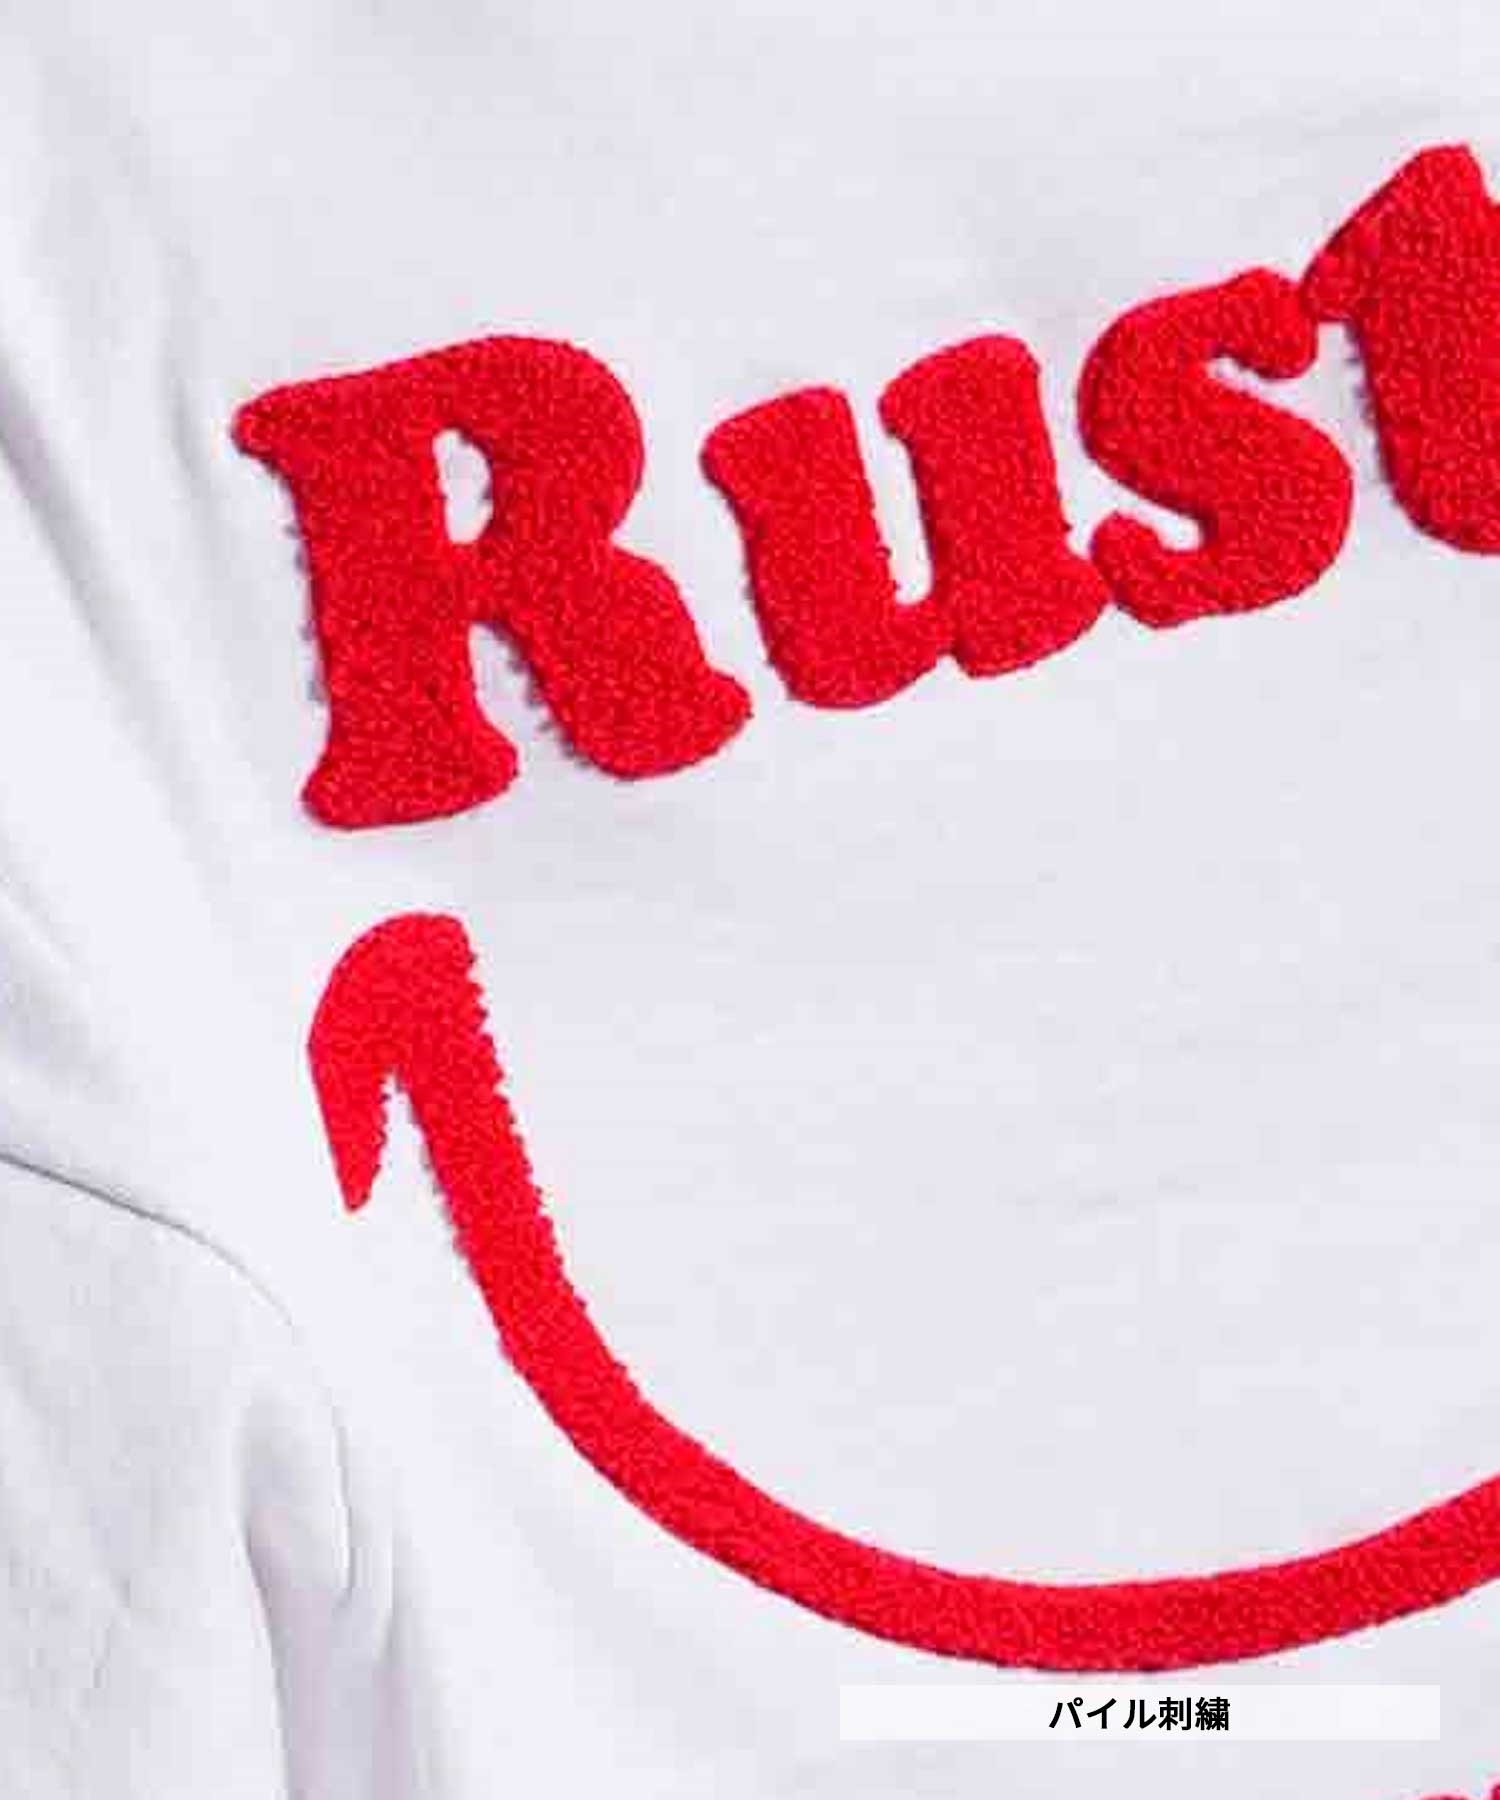 RUSTY ラスティー レディース 半袖 Tシャツ LOGO 924506(PPL-M)